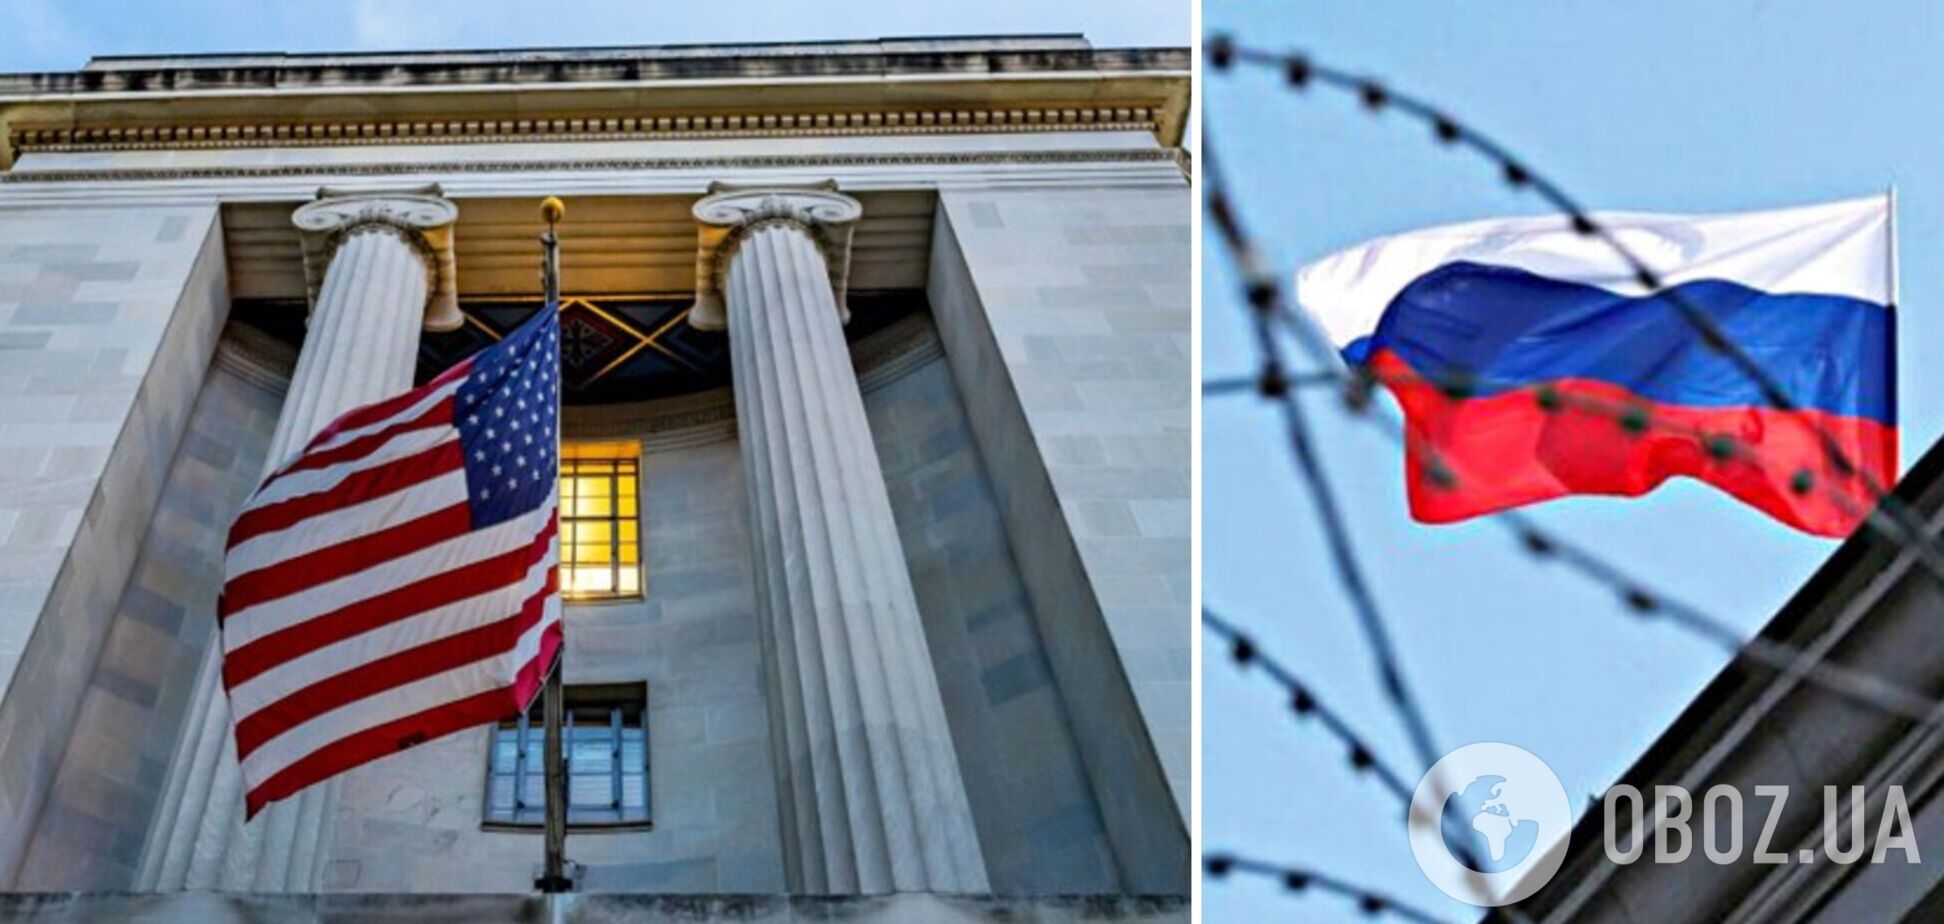 У США заарештували бізнесмена, який в обхід санкцій постачав напівпровідники для потреб армії РФ і ФСБ